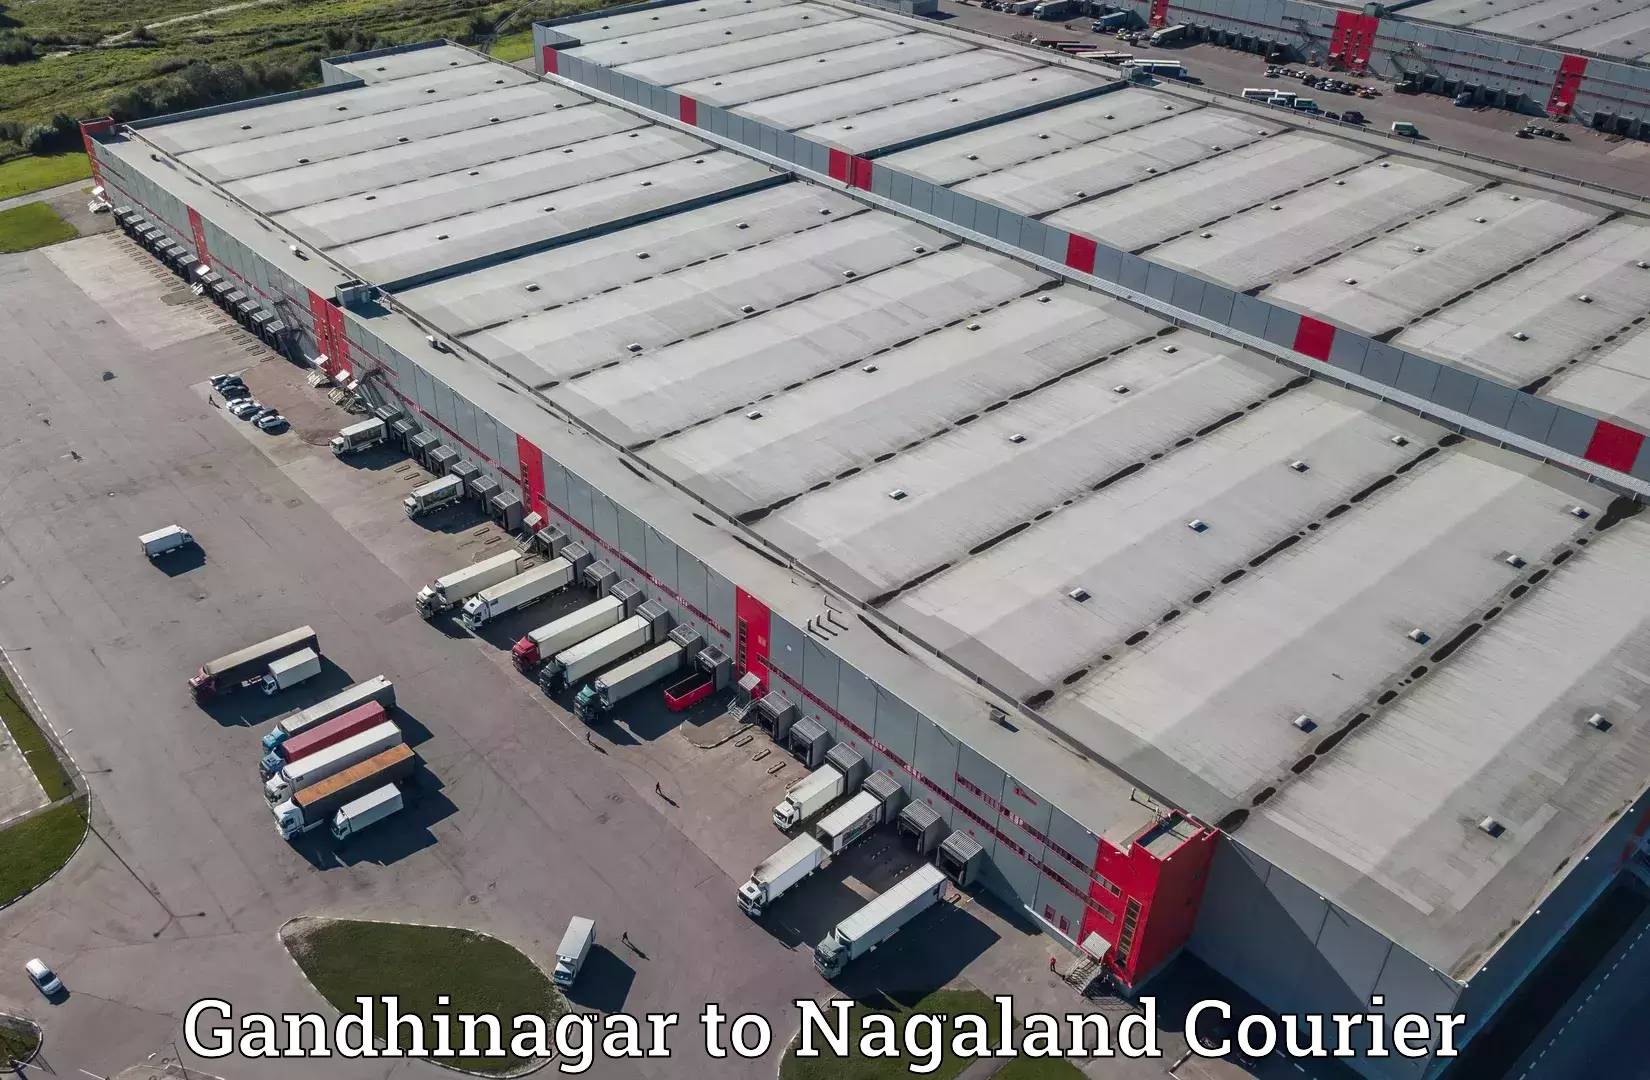 High-speed parcel service Gandhinagar to Dimapur